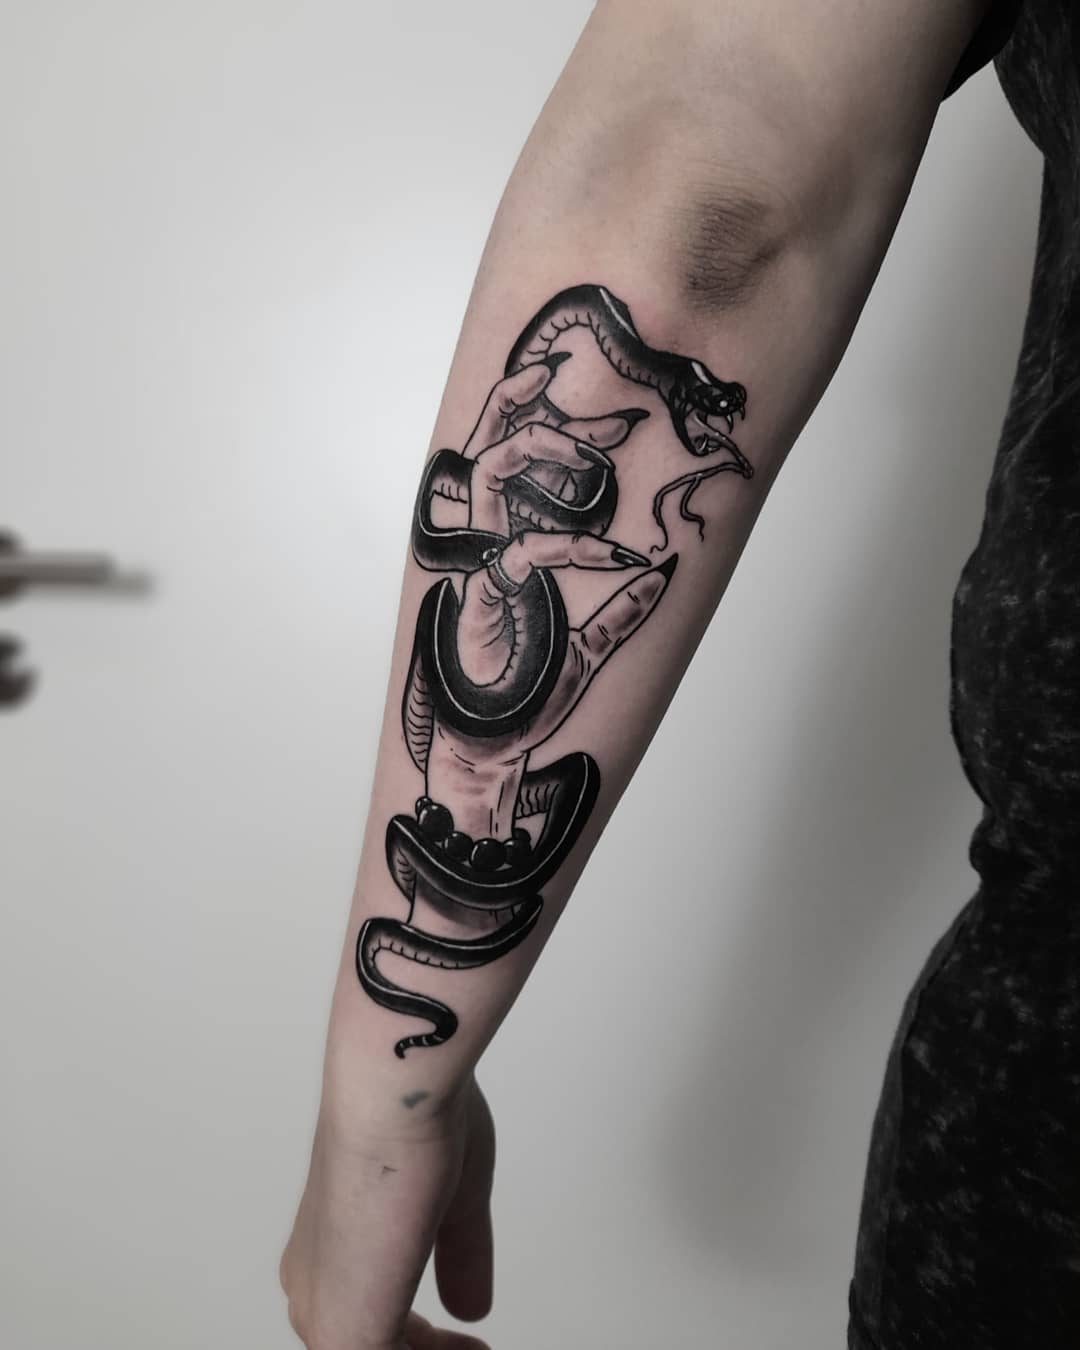 Snek für @mysteriously.one 
-
#snaketattoo #tattoo #tattoos #inked #ink #tattooe